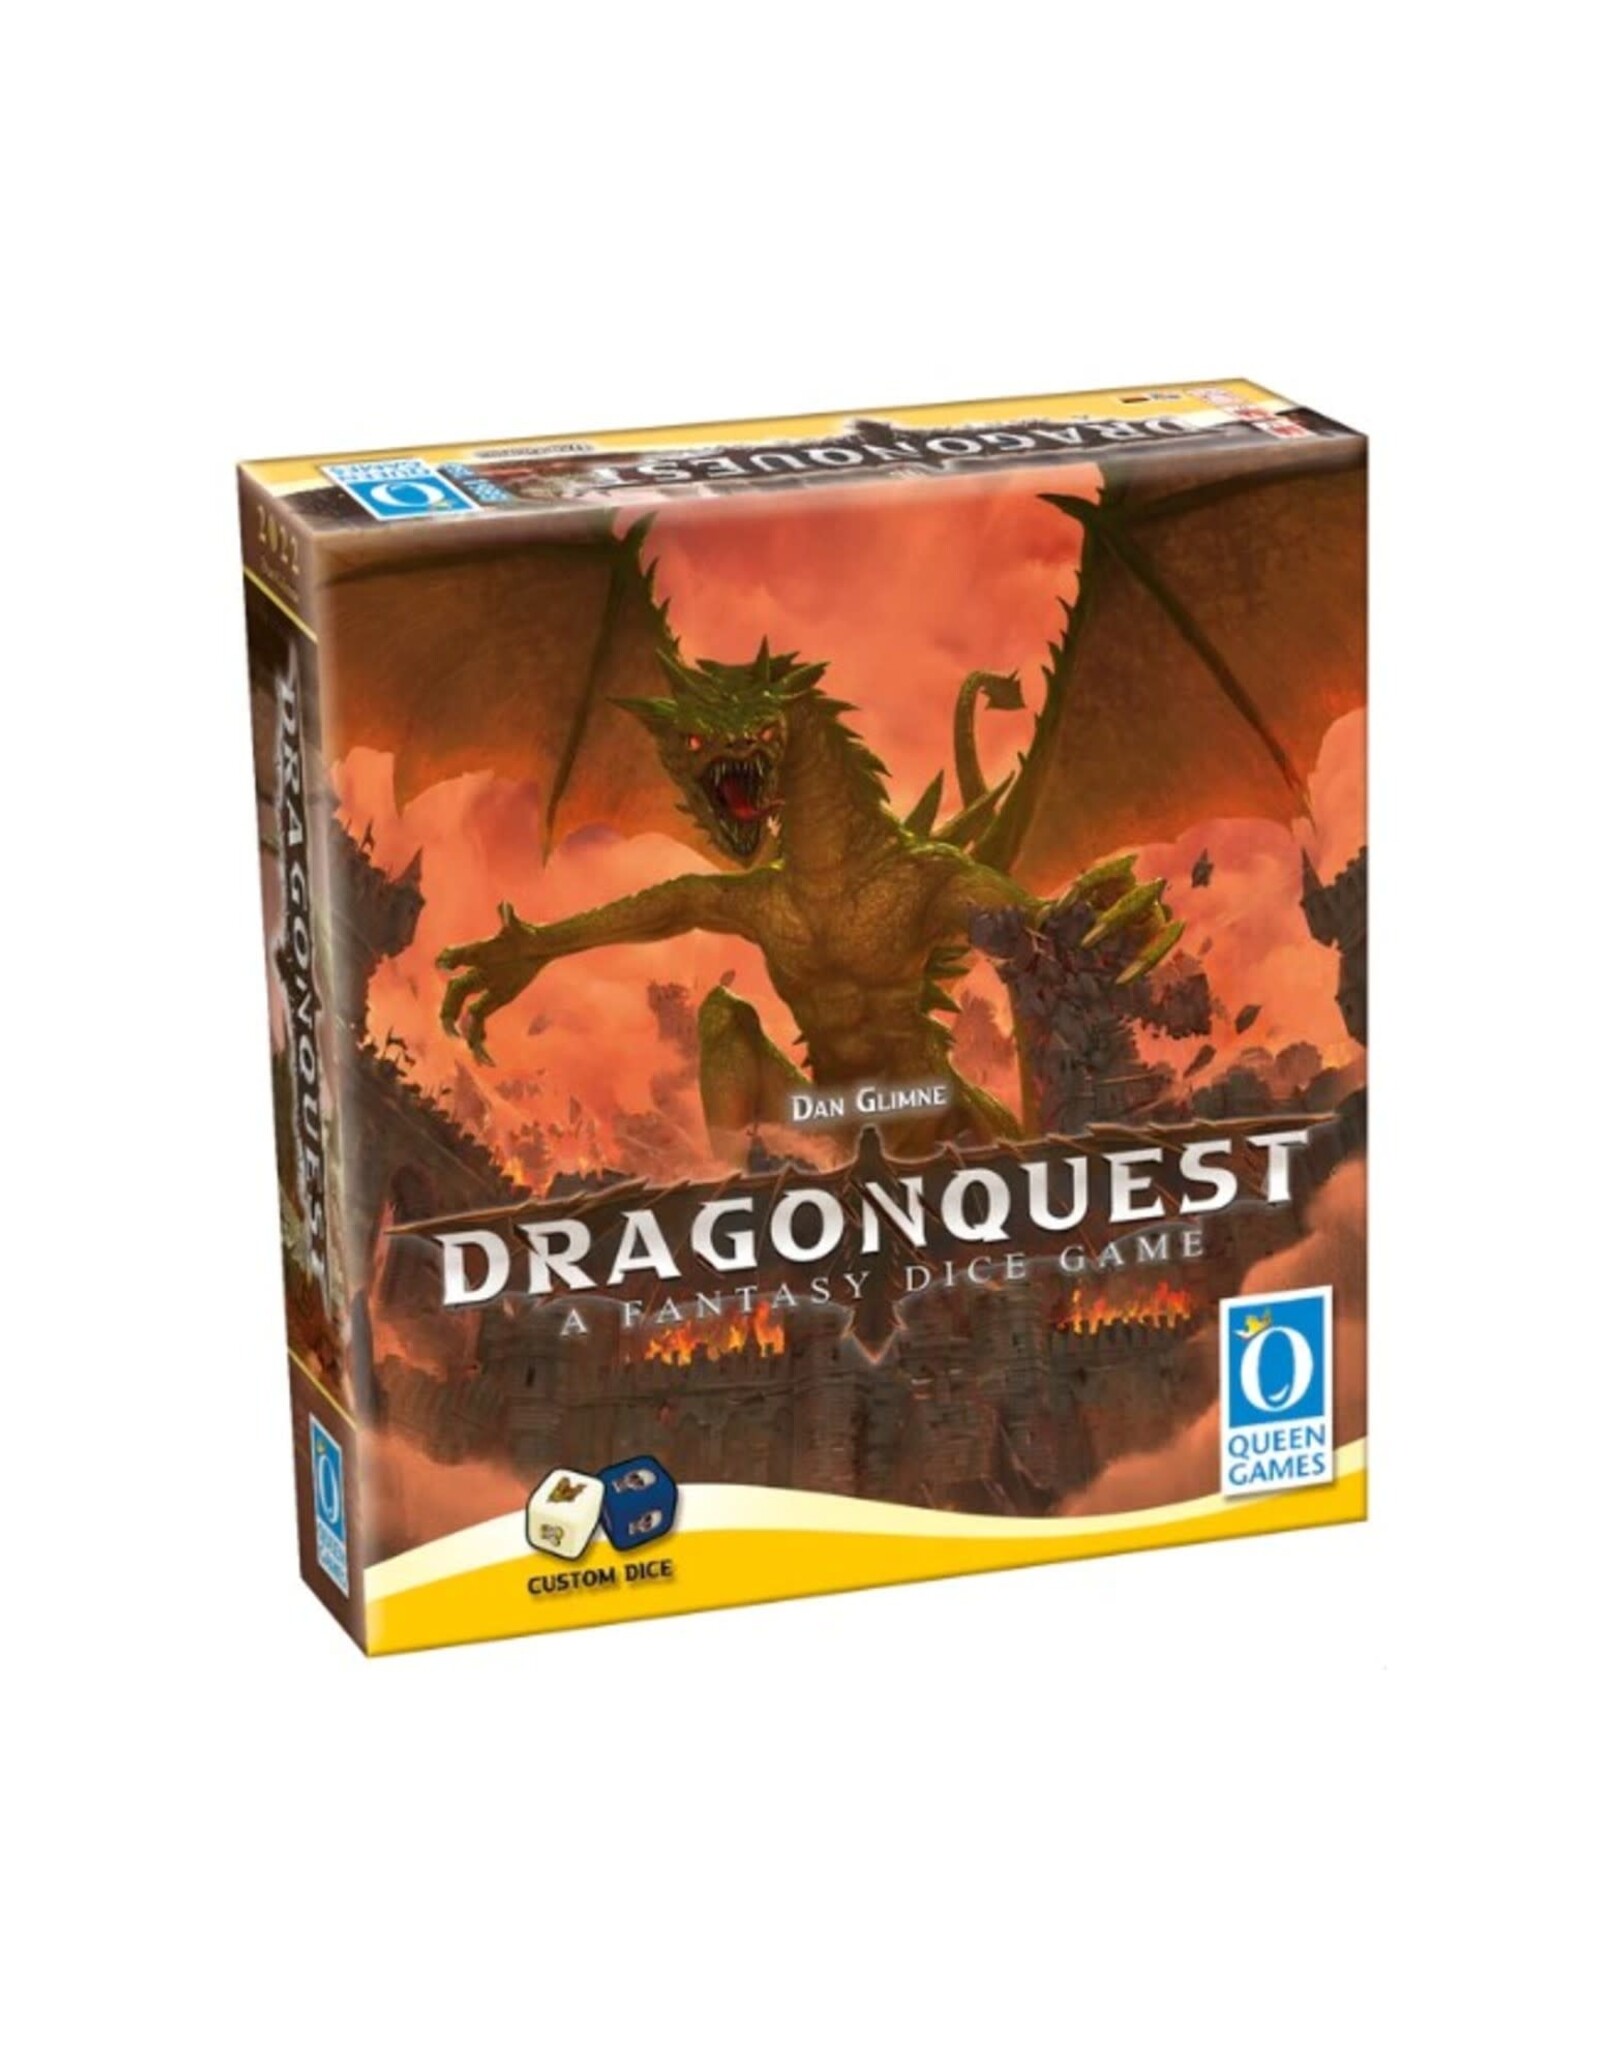 Dragon Quest: A Fantasy Dice Game